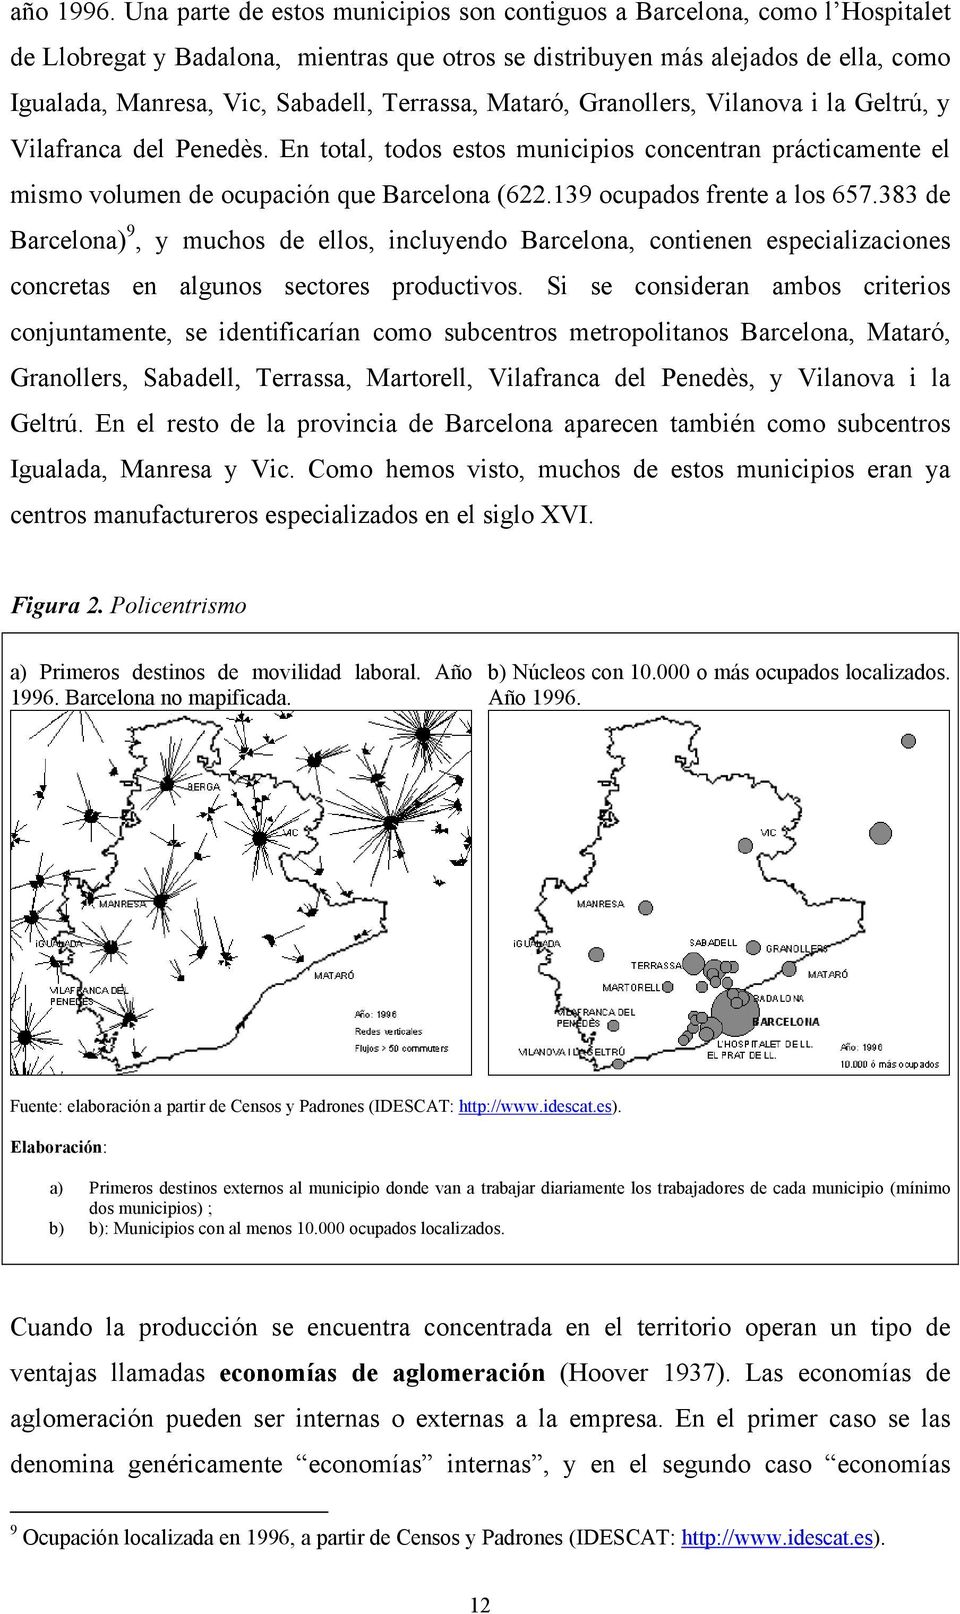 Terrassa, Mataró, Granollers, Vilanova i la Geltrú, y Vilafranca del Penedès. En total, todos estos municipios concentran prácticamente el mismo volumen de ocupación que Barcelona (622.